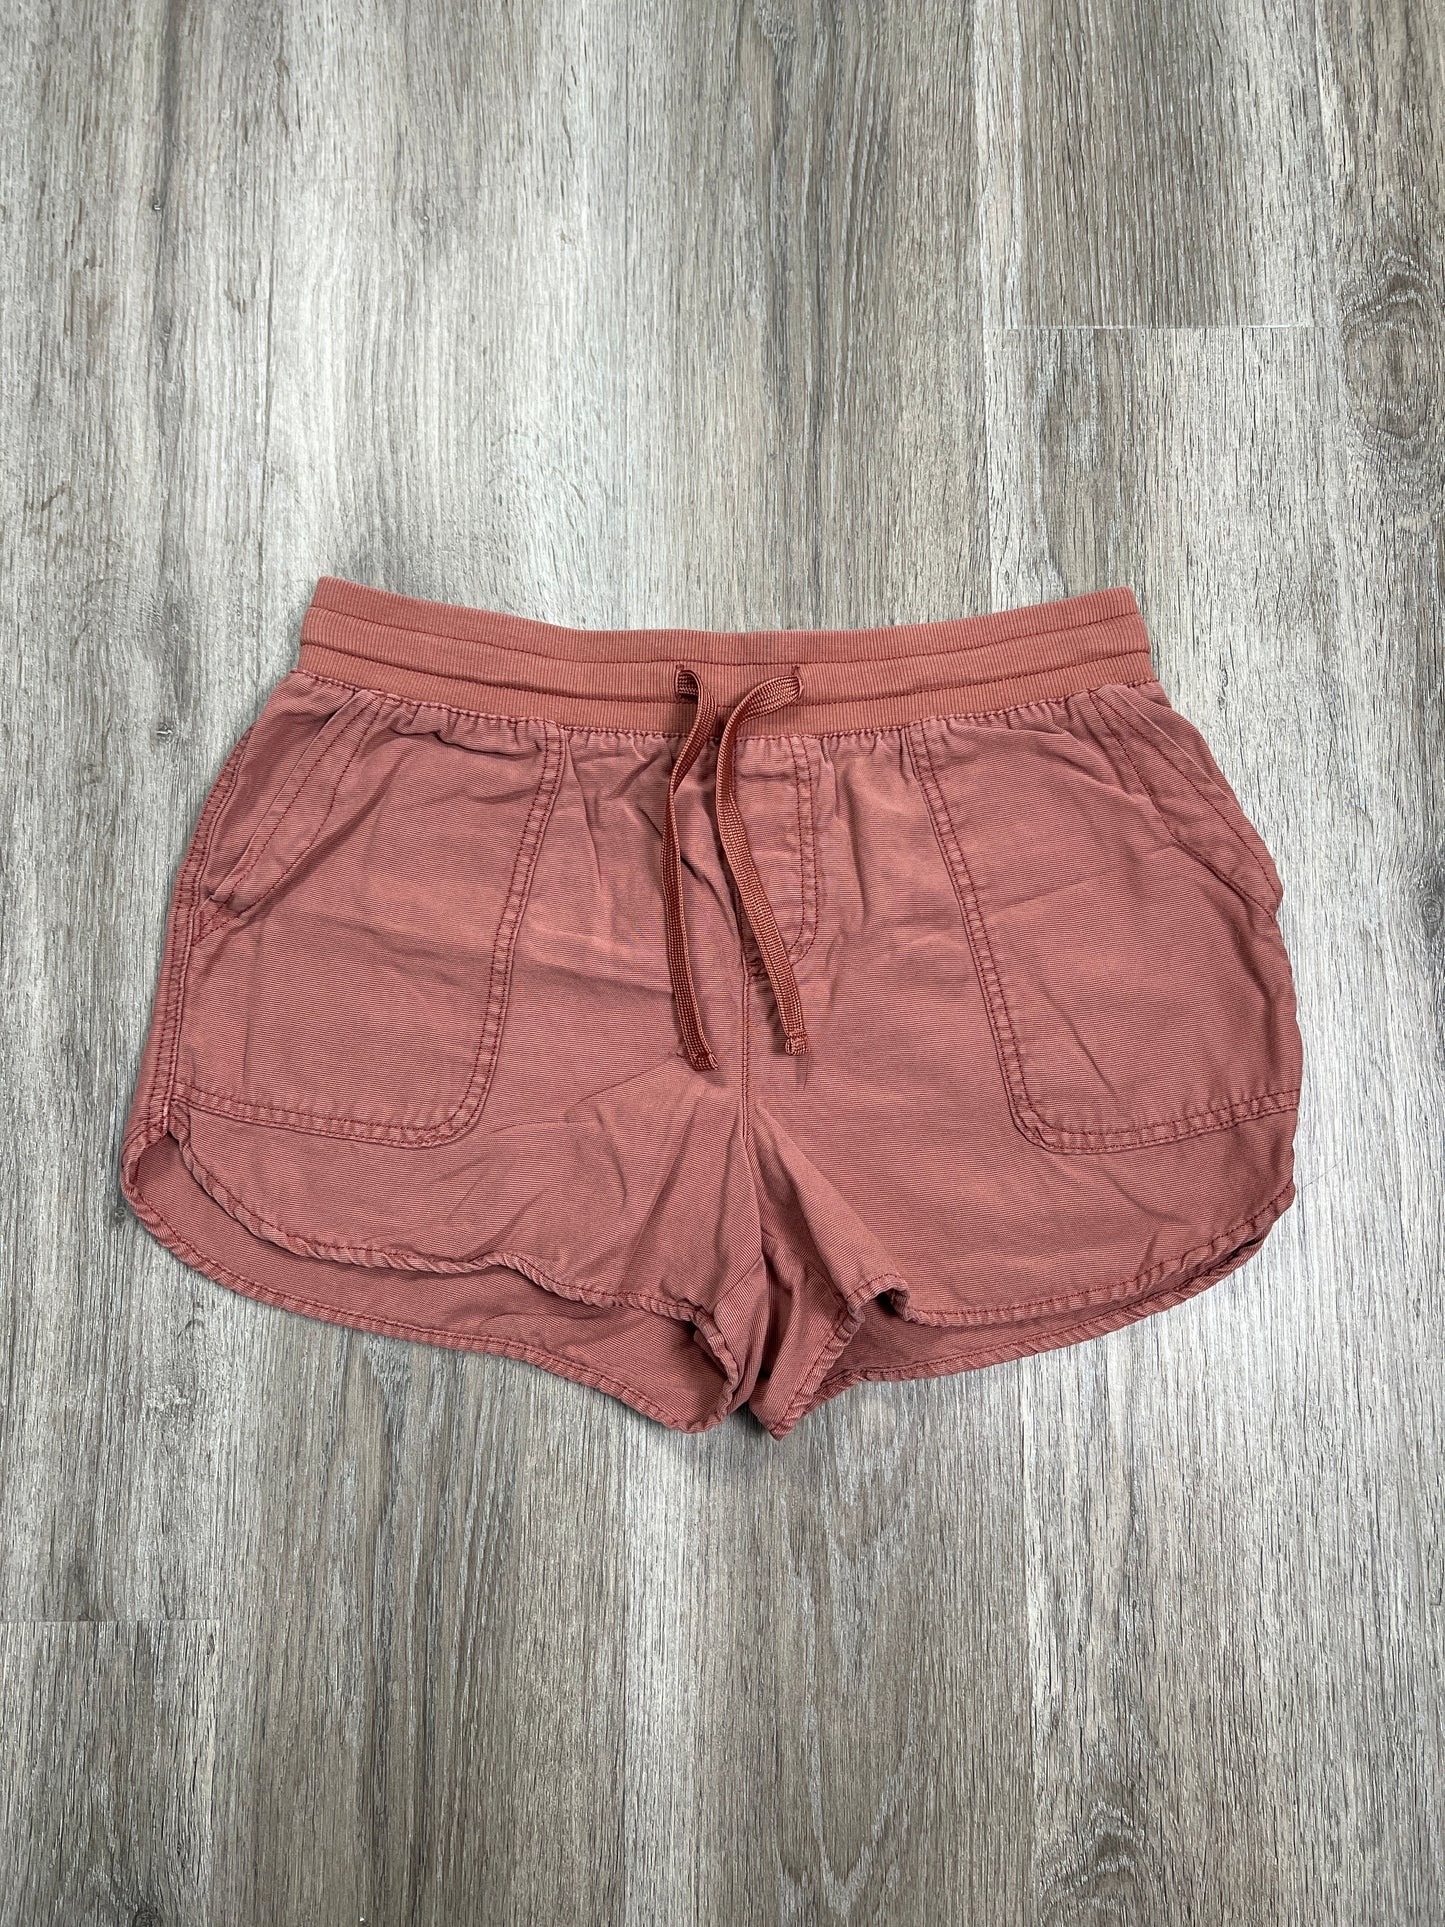 Orange Shorts Maurices, Size M